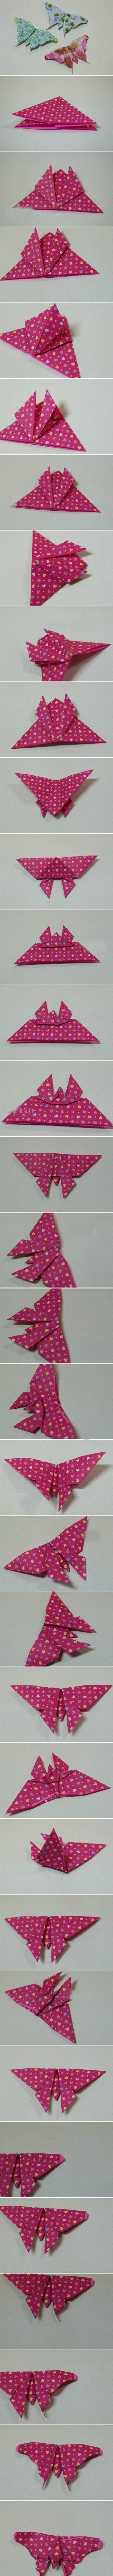 蝴蝶折纸教程 第1步